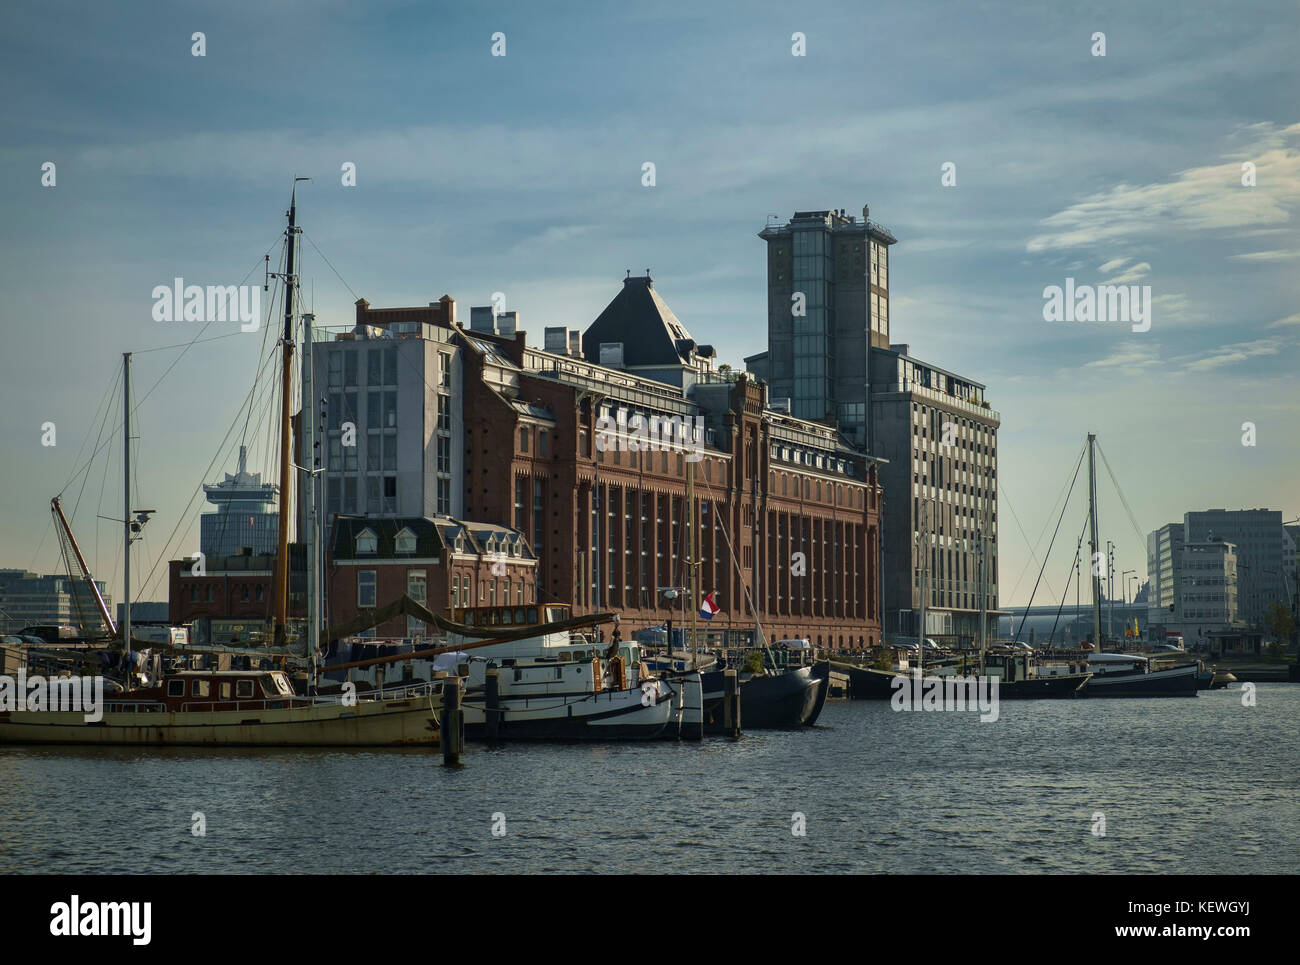 Silo de grano del siglo 19th convertido a 21st siglo residencial y espacio de trabajo en el puerto de Amsterdam. Foto de stock